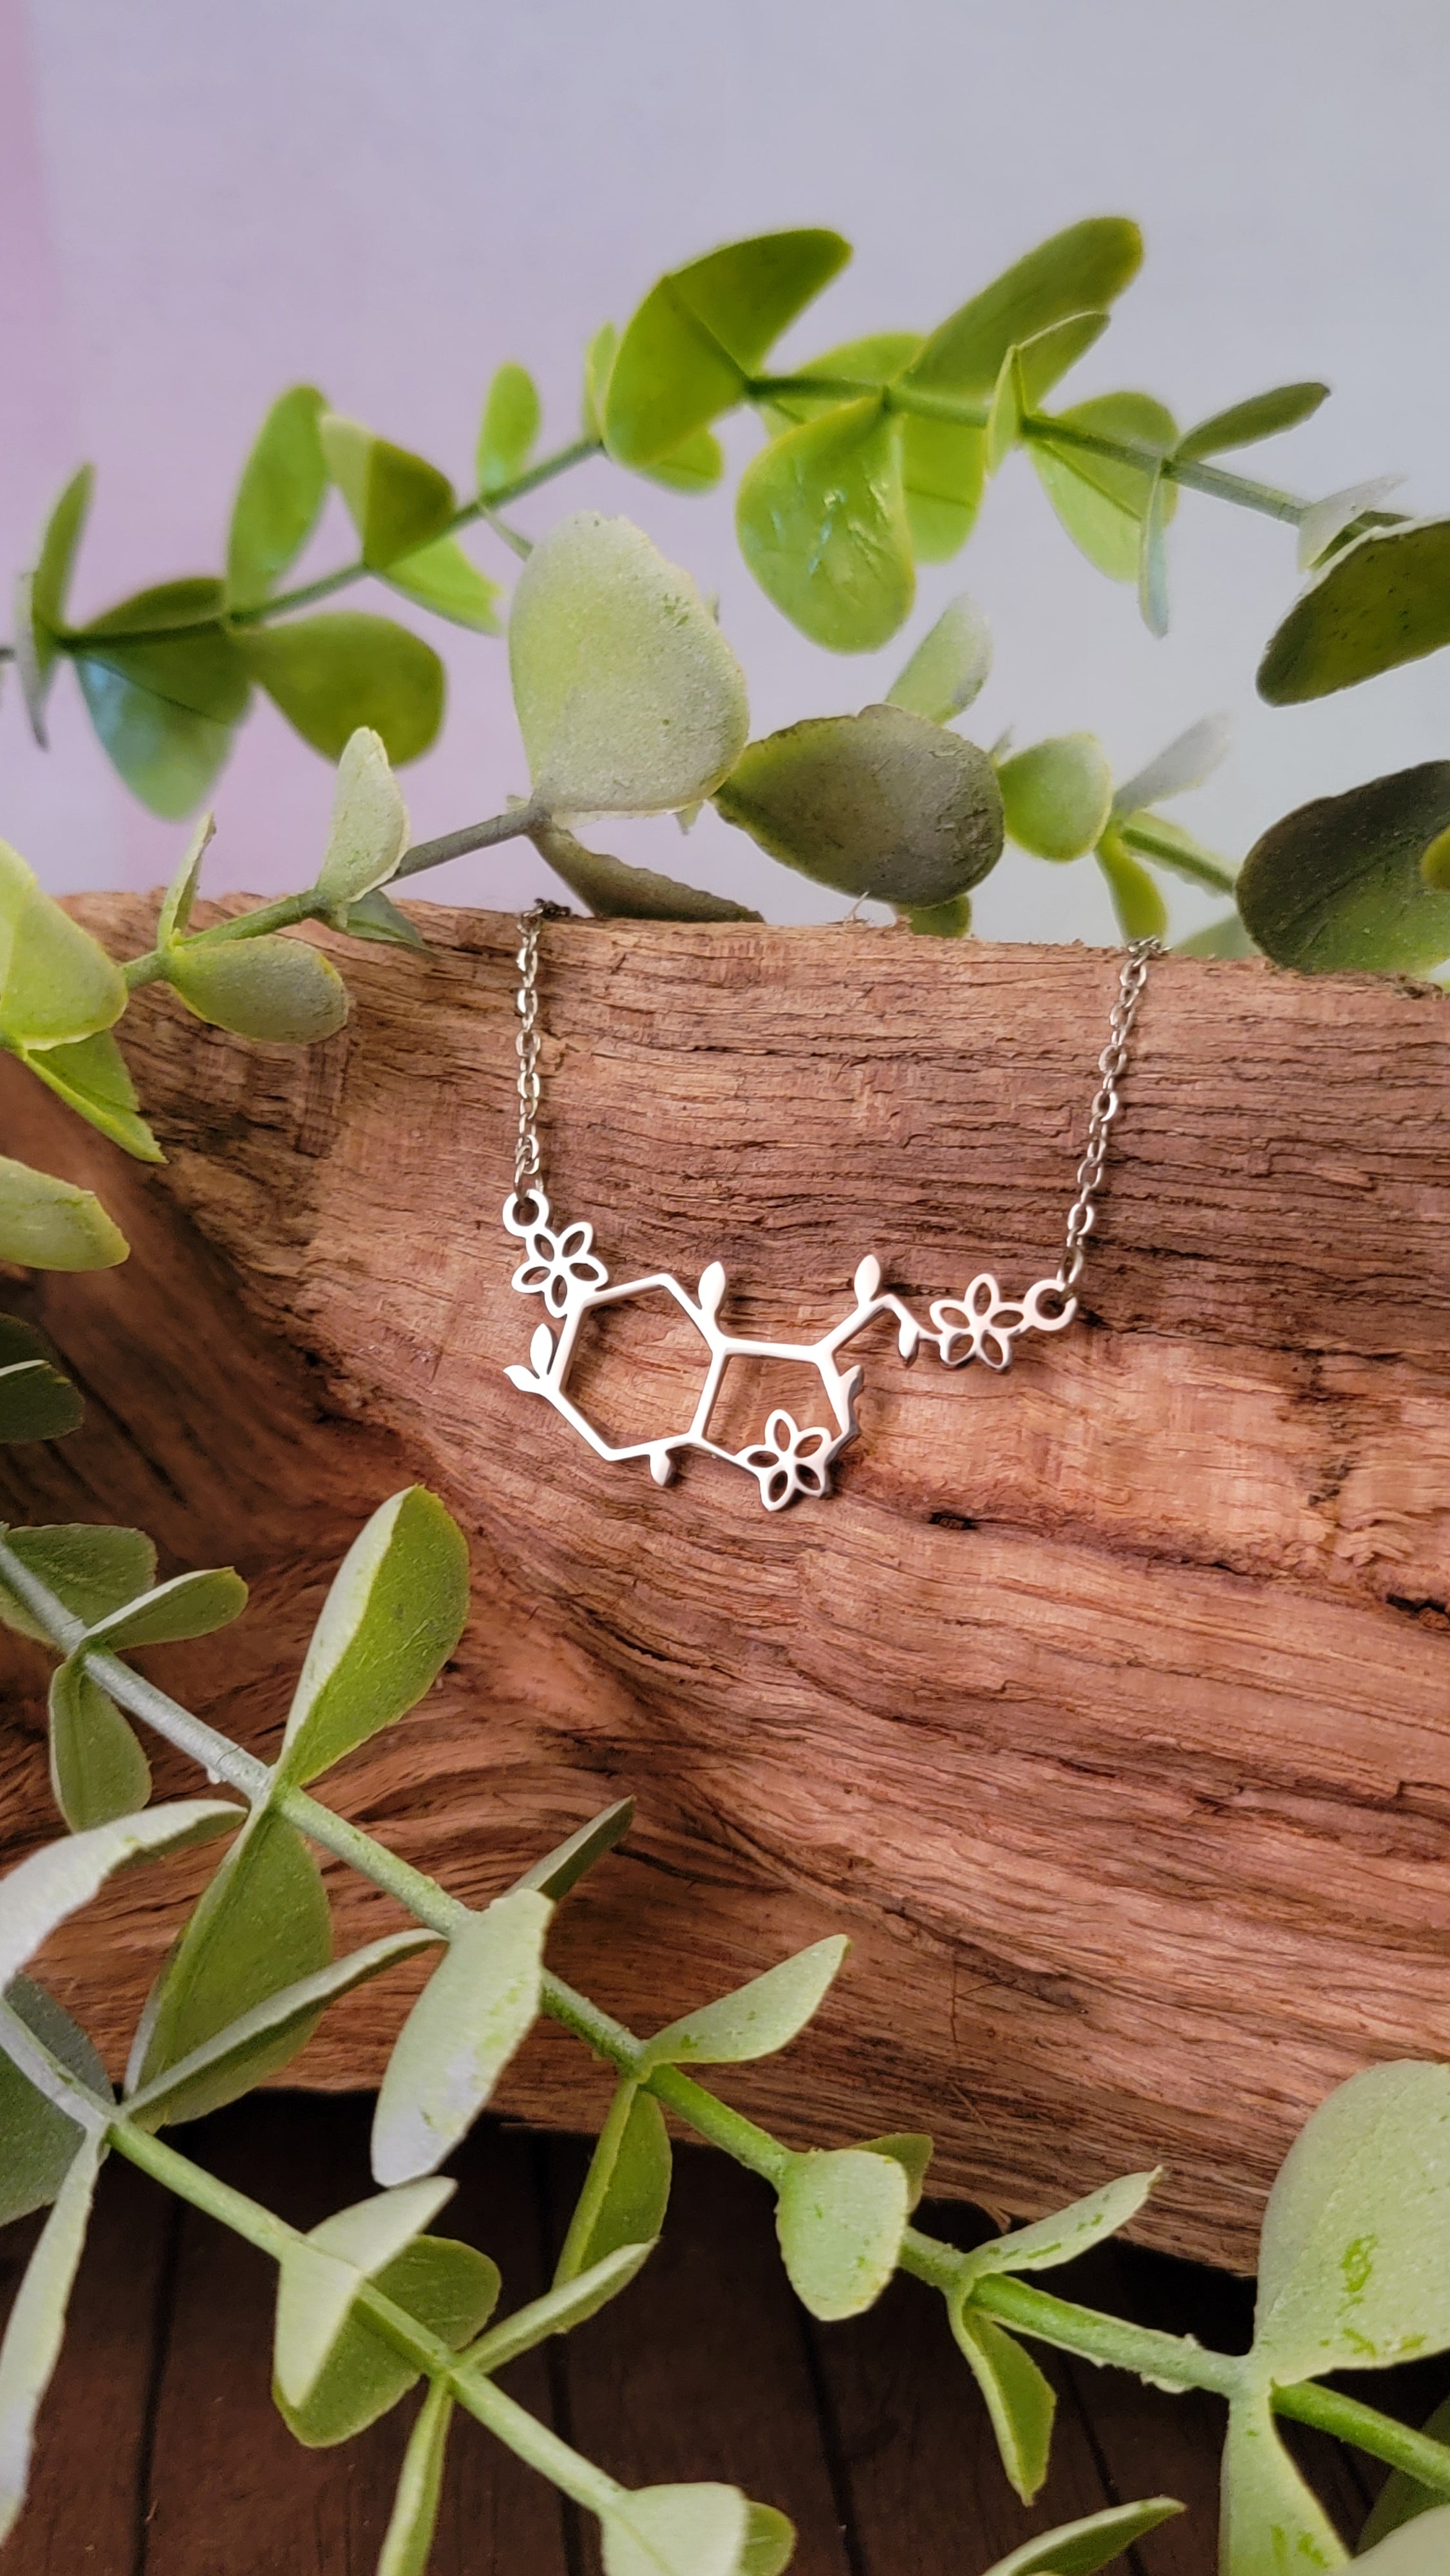 In Serotonin Molecule Pendant Necklace For Women Vintage Geometric  Chemistry Stainless Steel Serotonin DNA Choker Jewelry Gifts - AliExpress